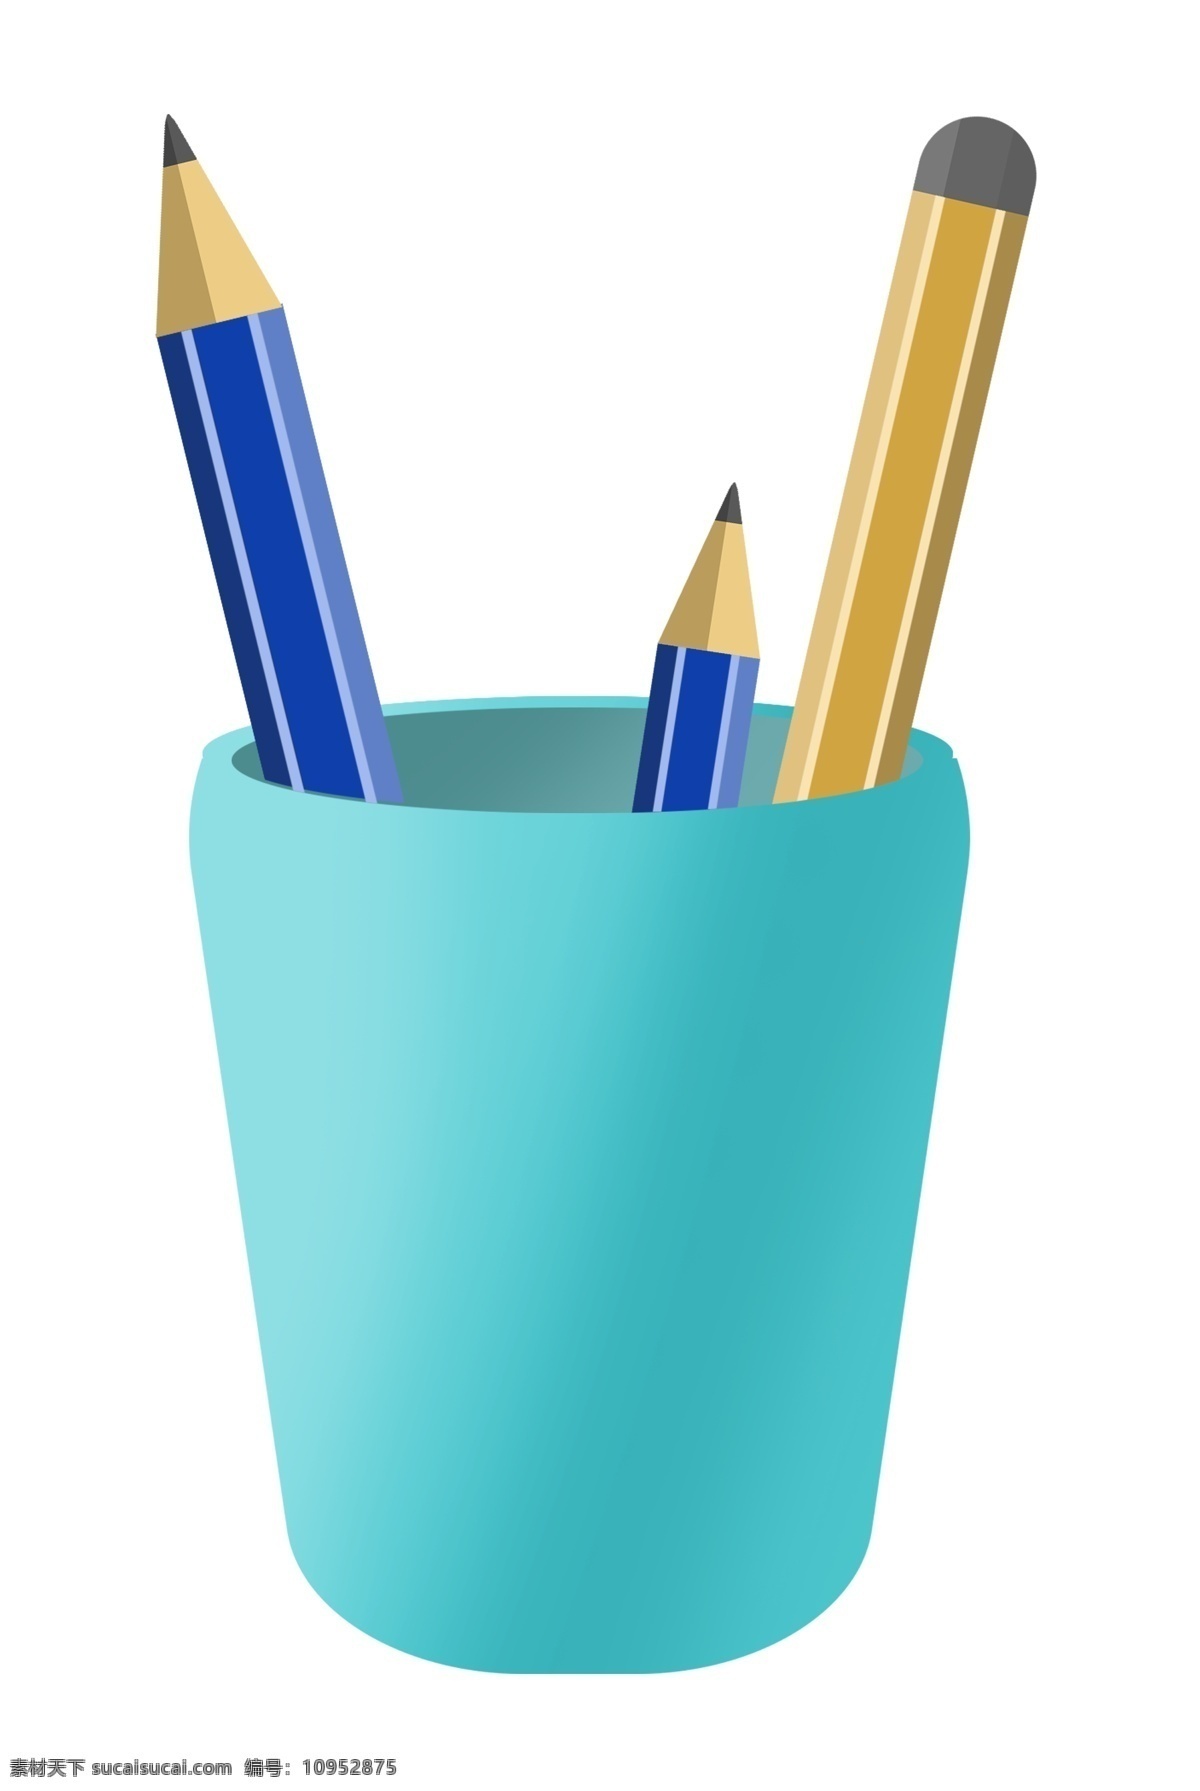 蓝色 笔筒 装饰 插画 蓝色的笔筒 彩色的铅笔 漂亮的笔筒 笔筒装饰 笔筒插画 立体笔筒 办公笔筒